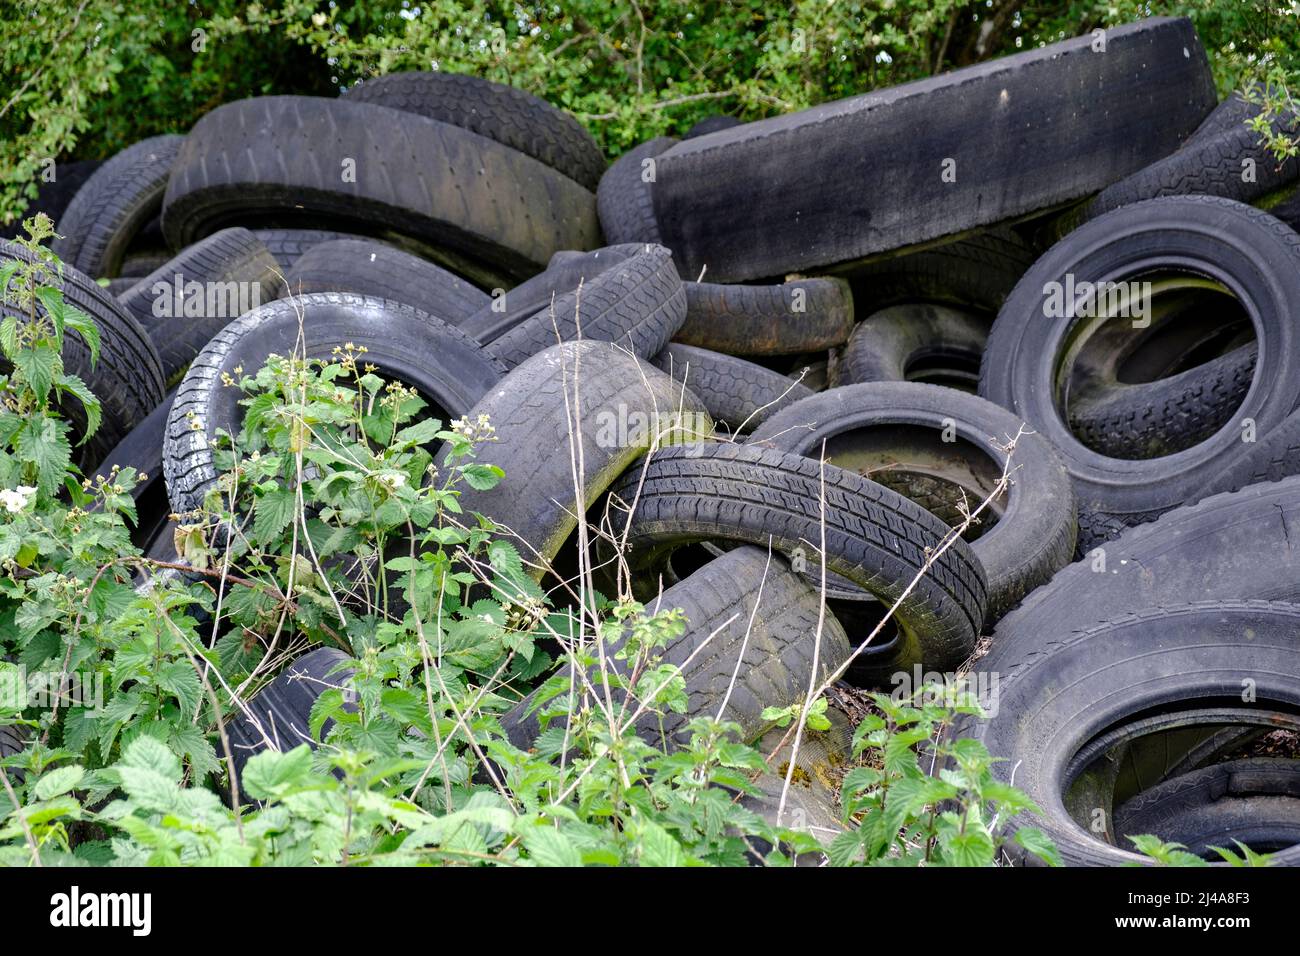 Vieux pneus abandonnes au detour d'un bois - Pollution visuelle et chimique  | Old car tires abandoned cause chemical ground pollution Stock Photo -  Alamy